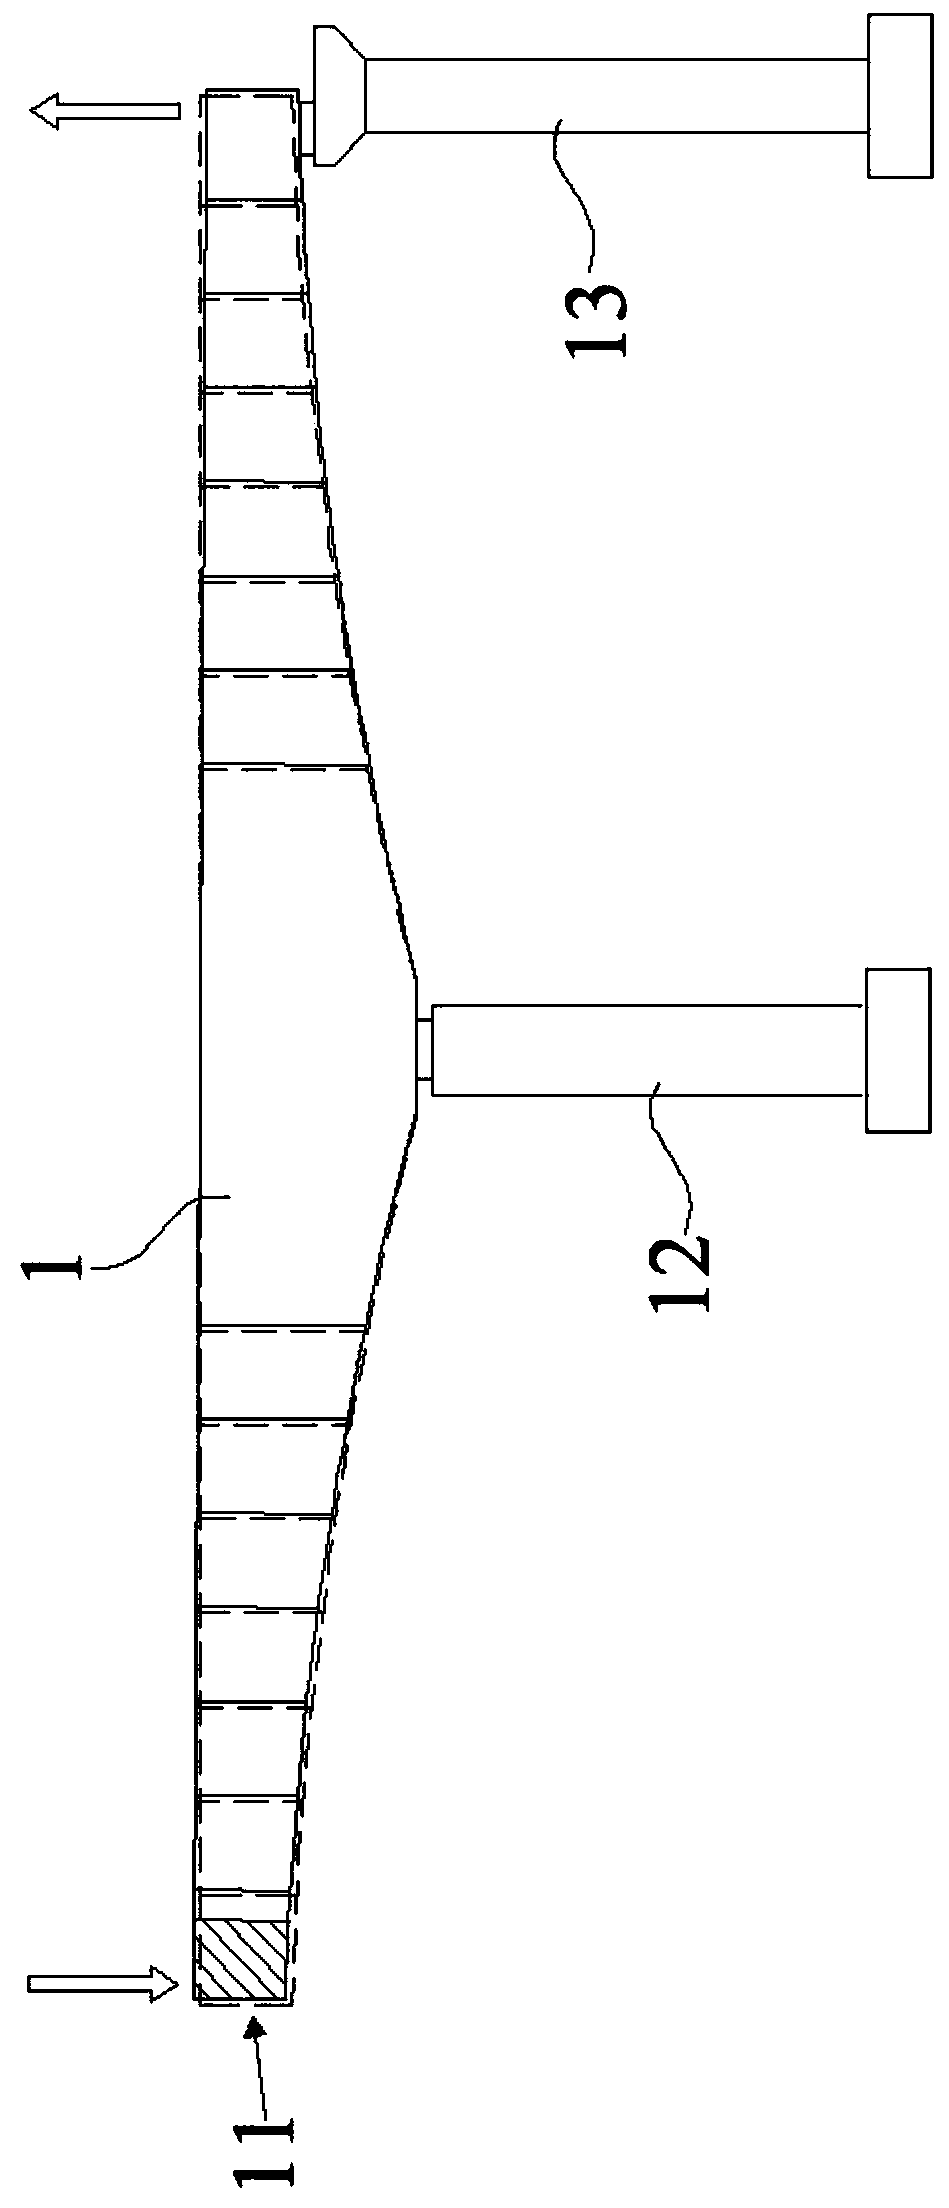 Bridge Deck Elevation Adjustment Method